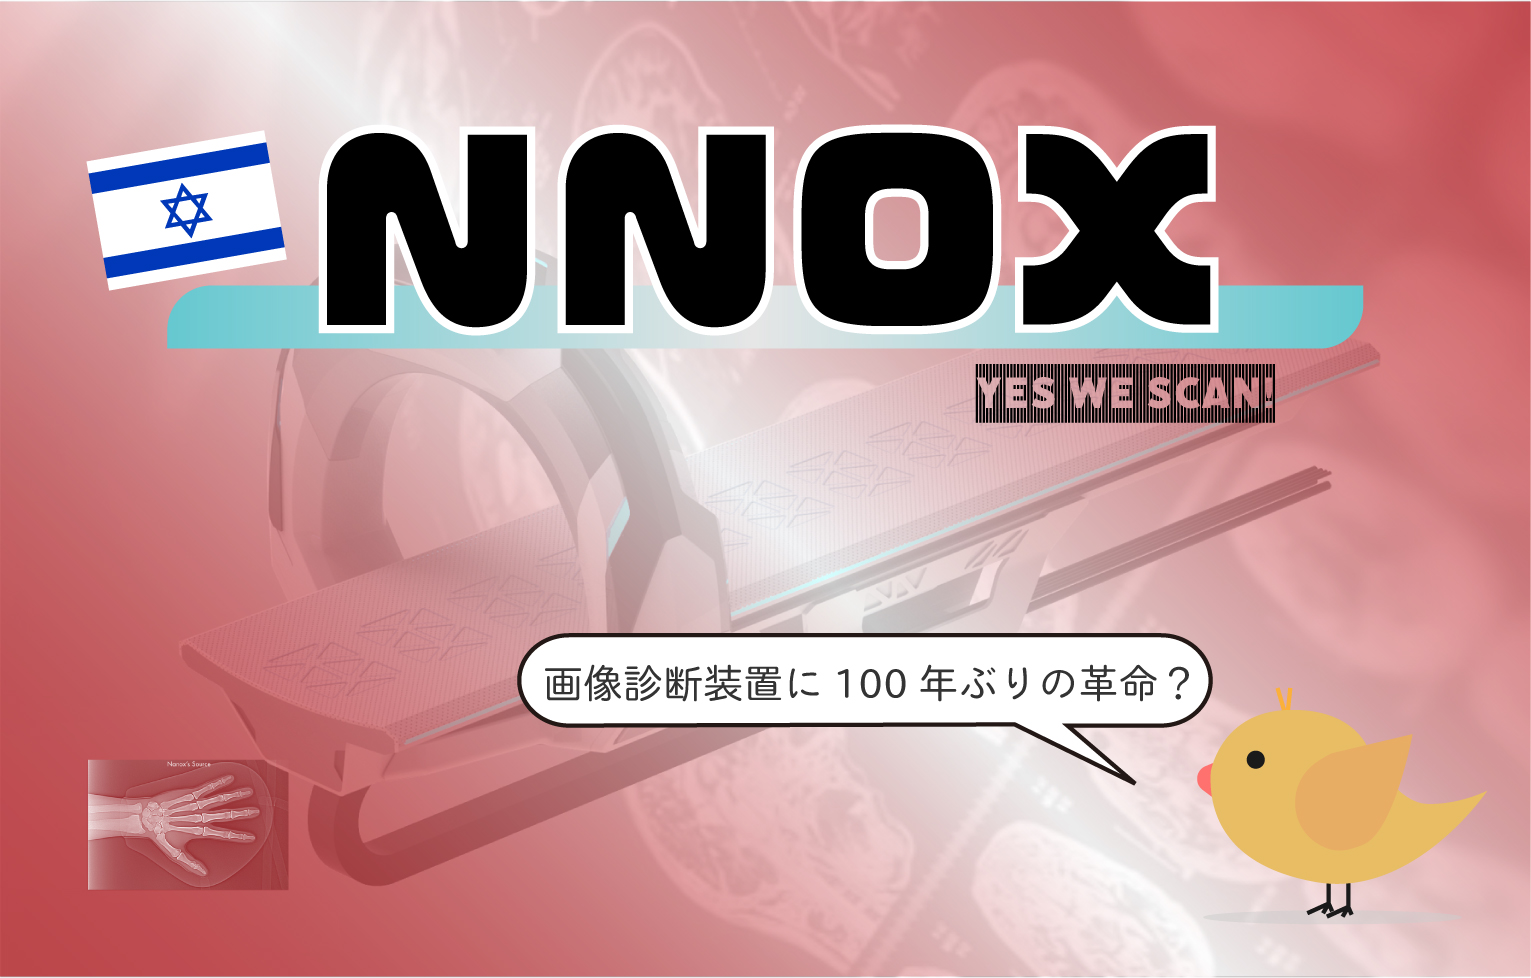 革命的な医療用画像診断装置を開発するナノックス・イメージングの投資情報【NNOX】